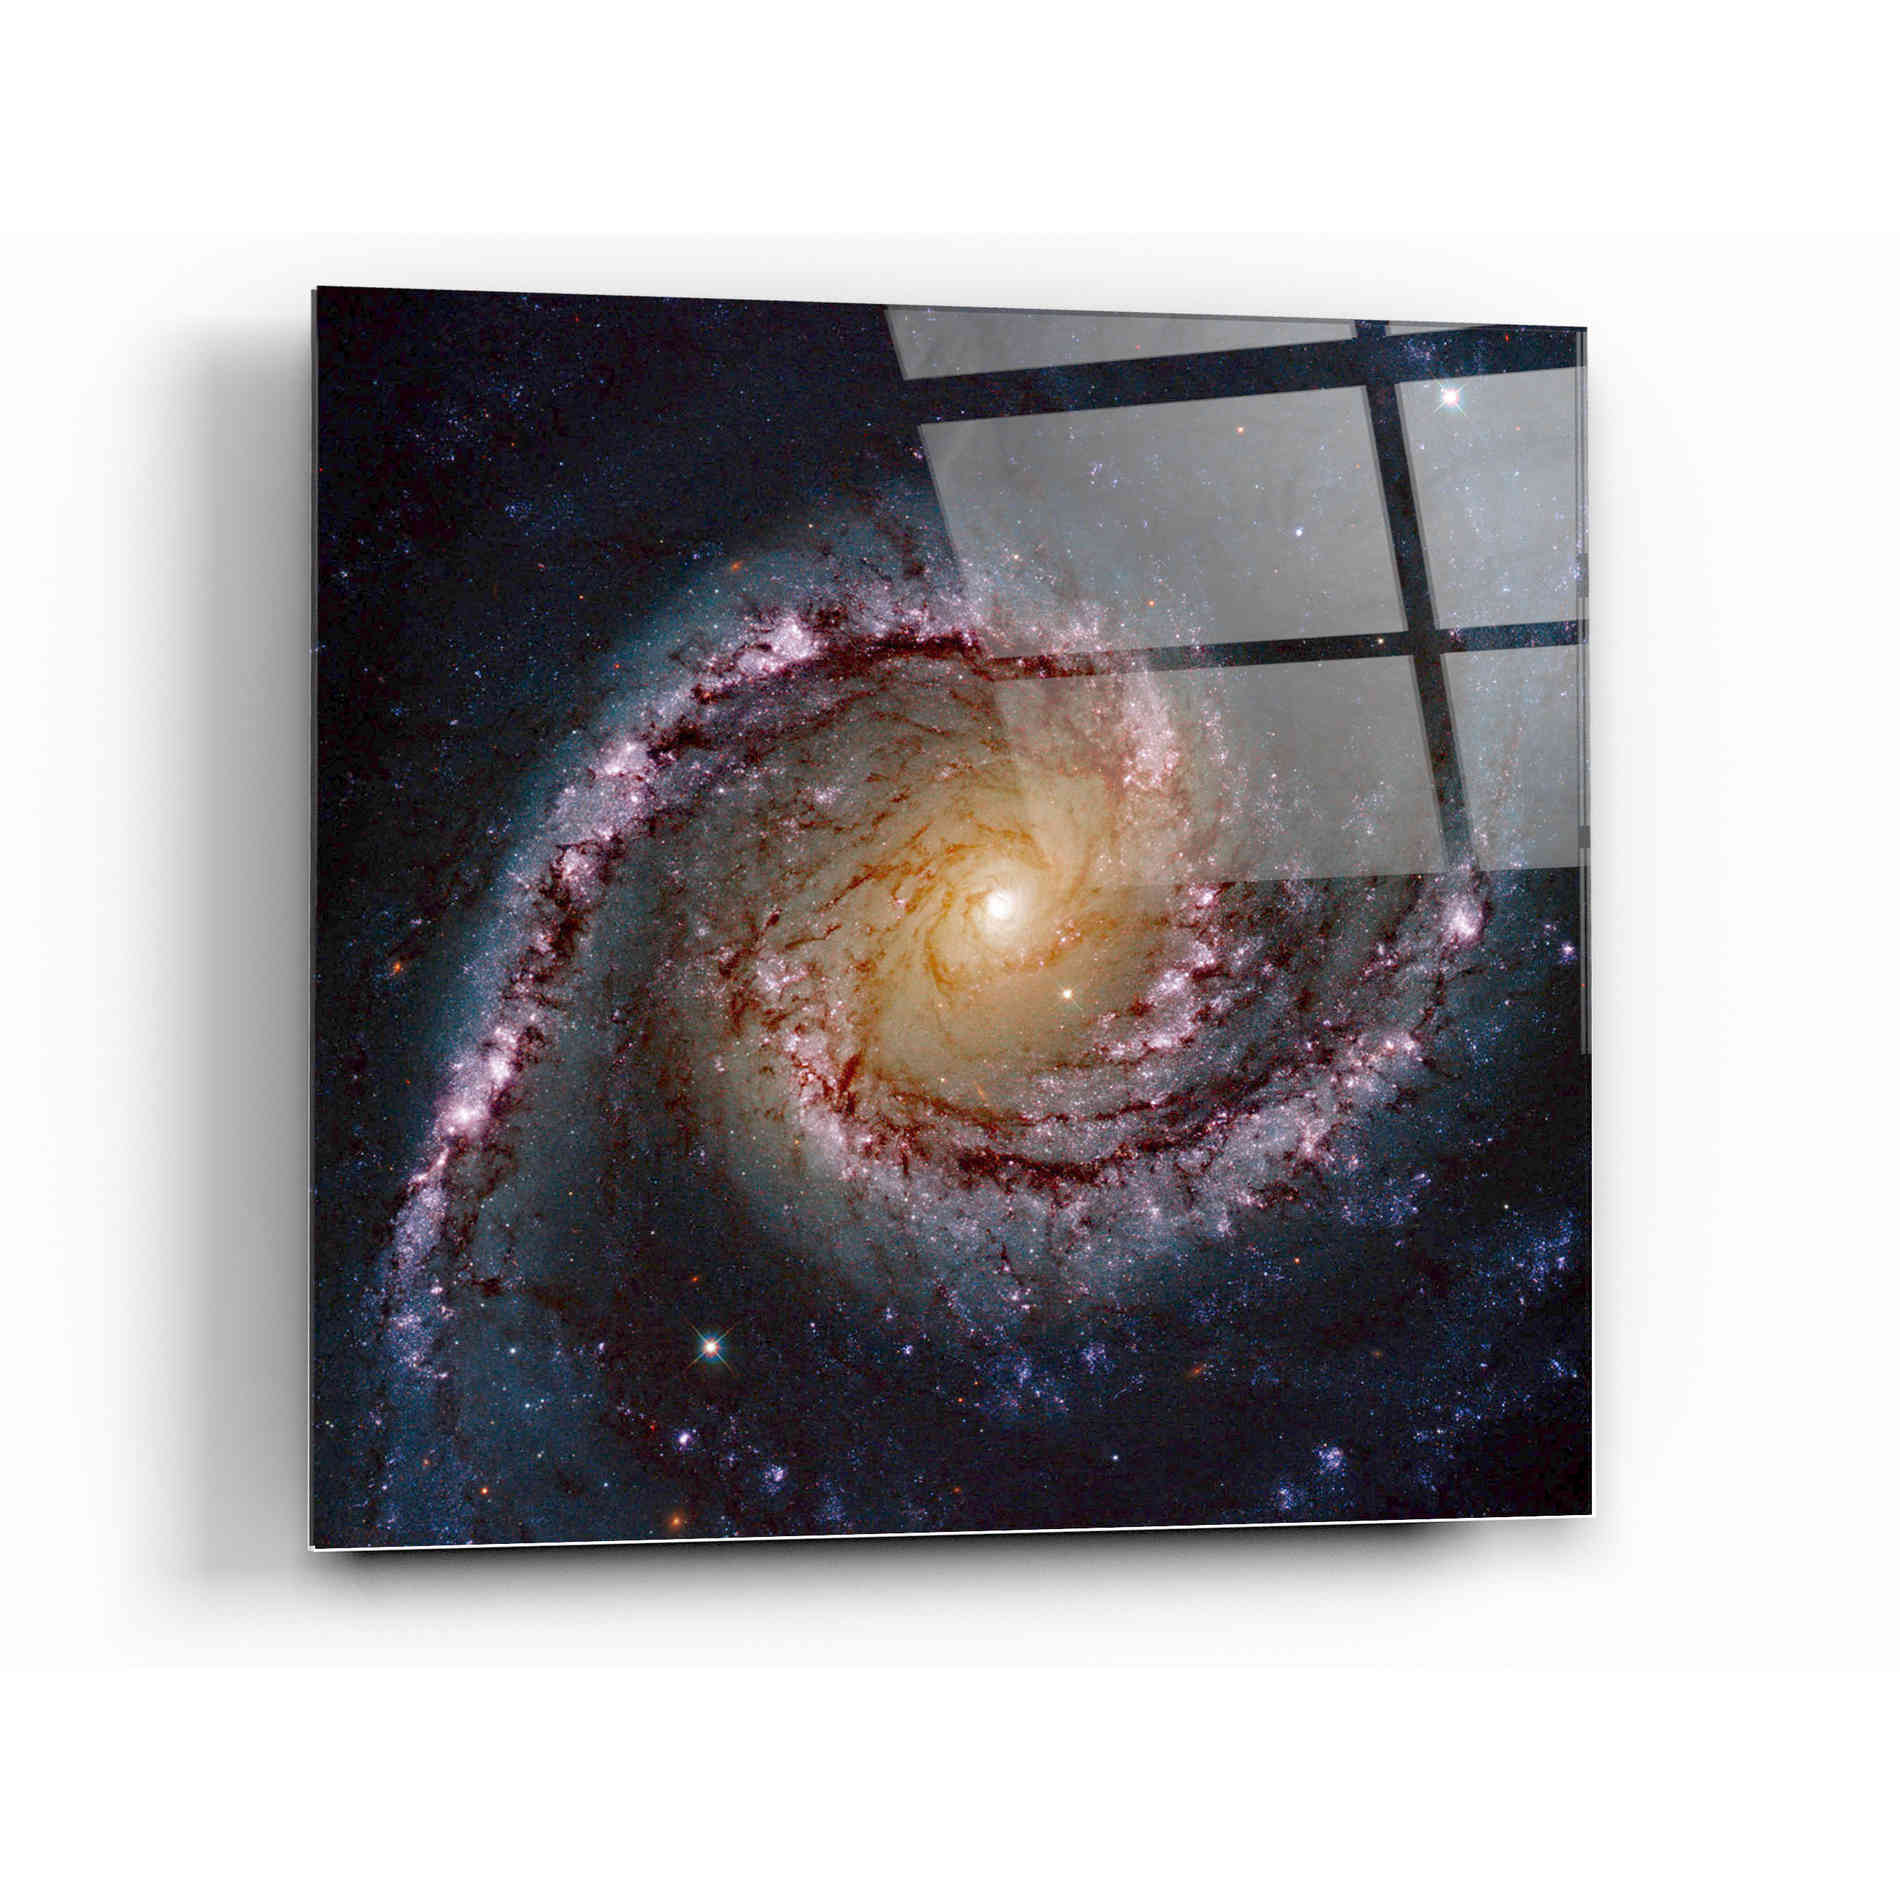 Epic Art "Grand Swirls" Hubble Space Telescope Acrylic Glass Wall Art,12x12